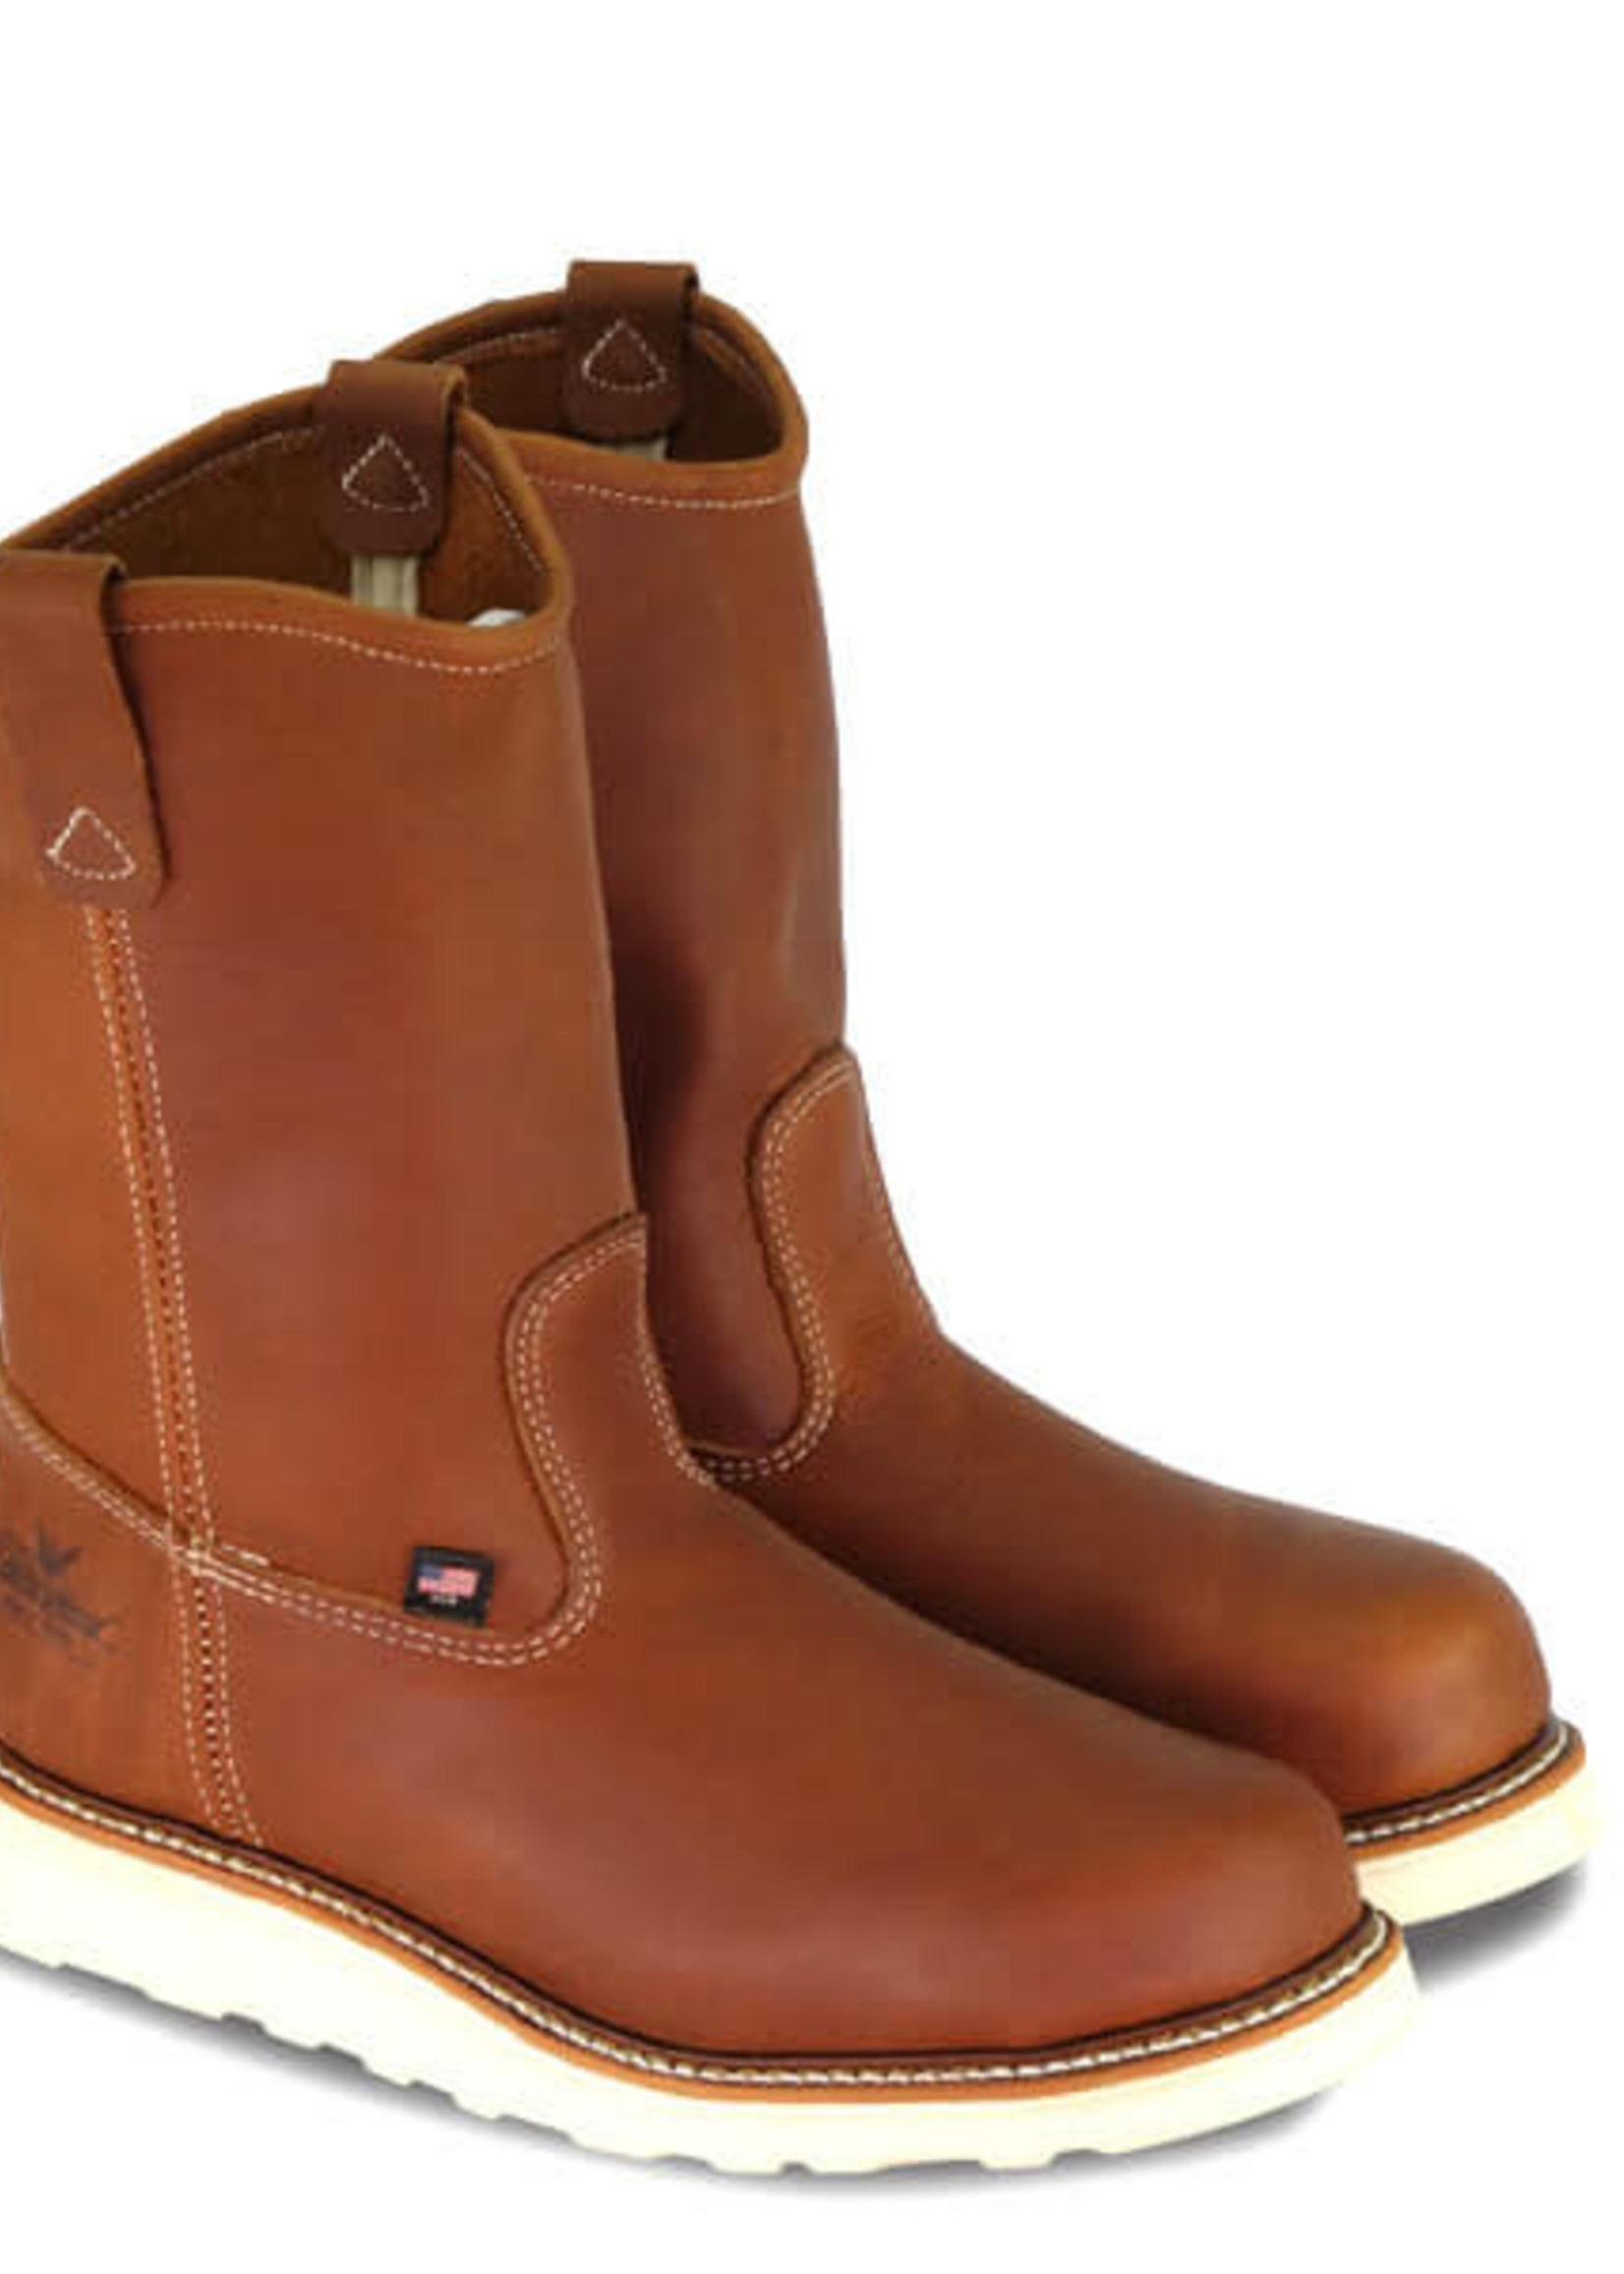 Boots-Men THOROGOOD 814-4208 8" Soft Toe Wellington